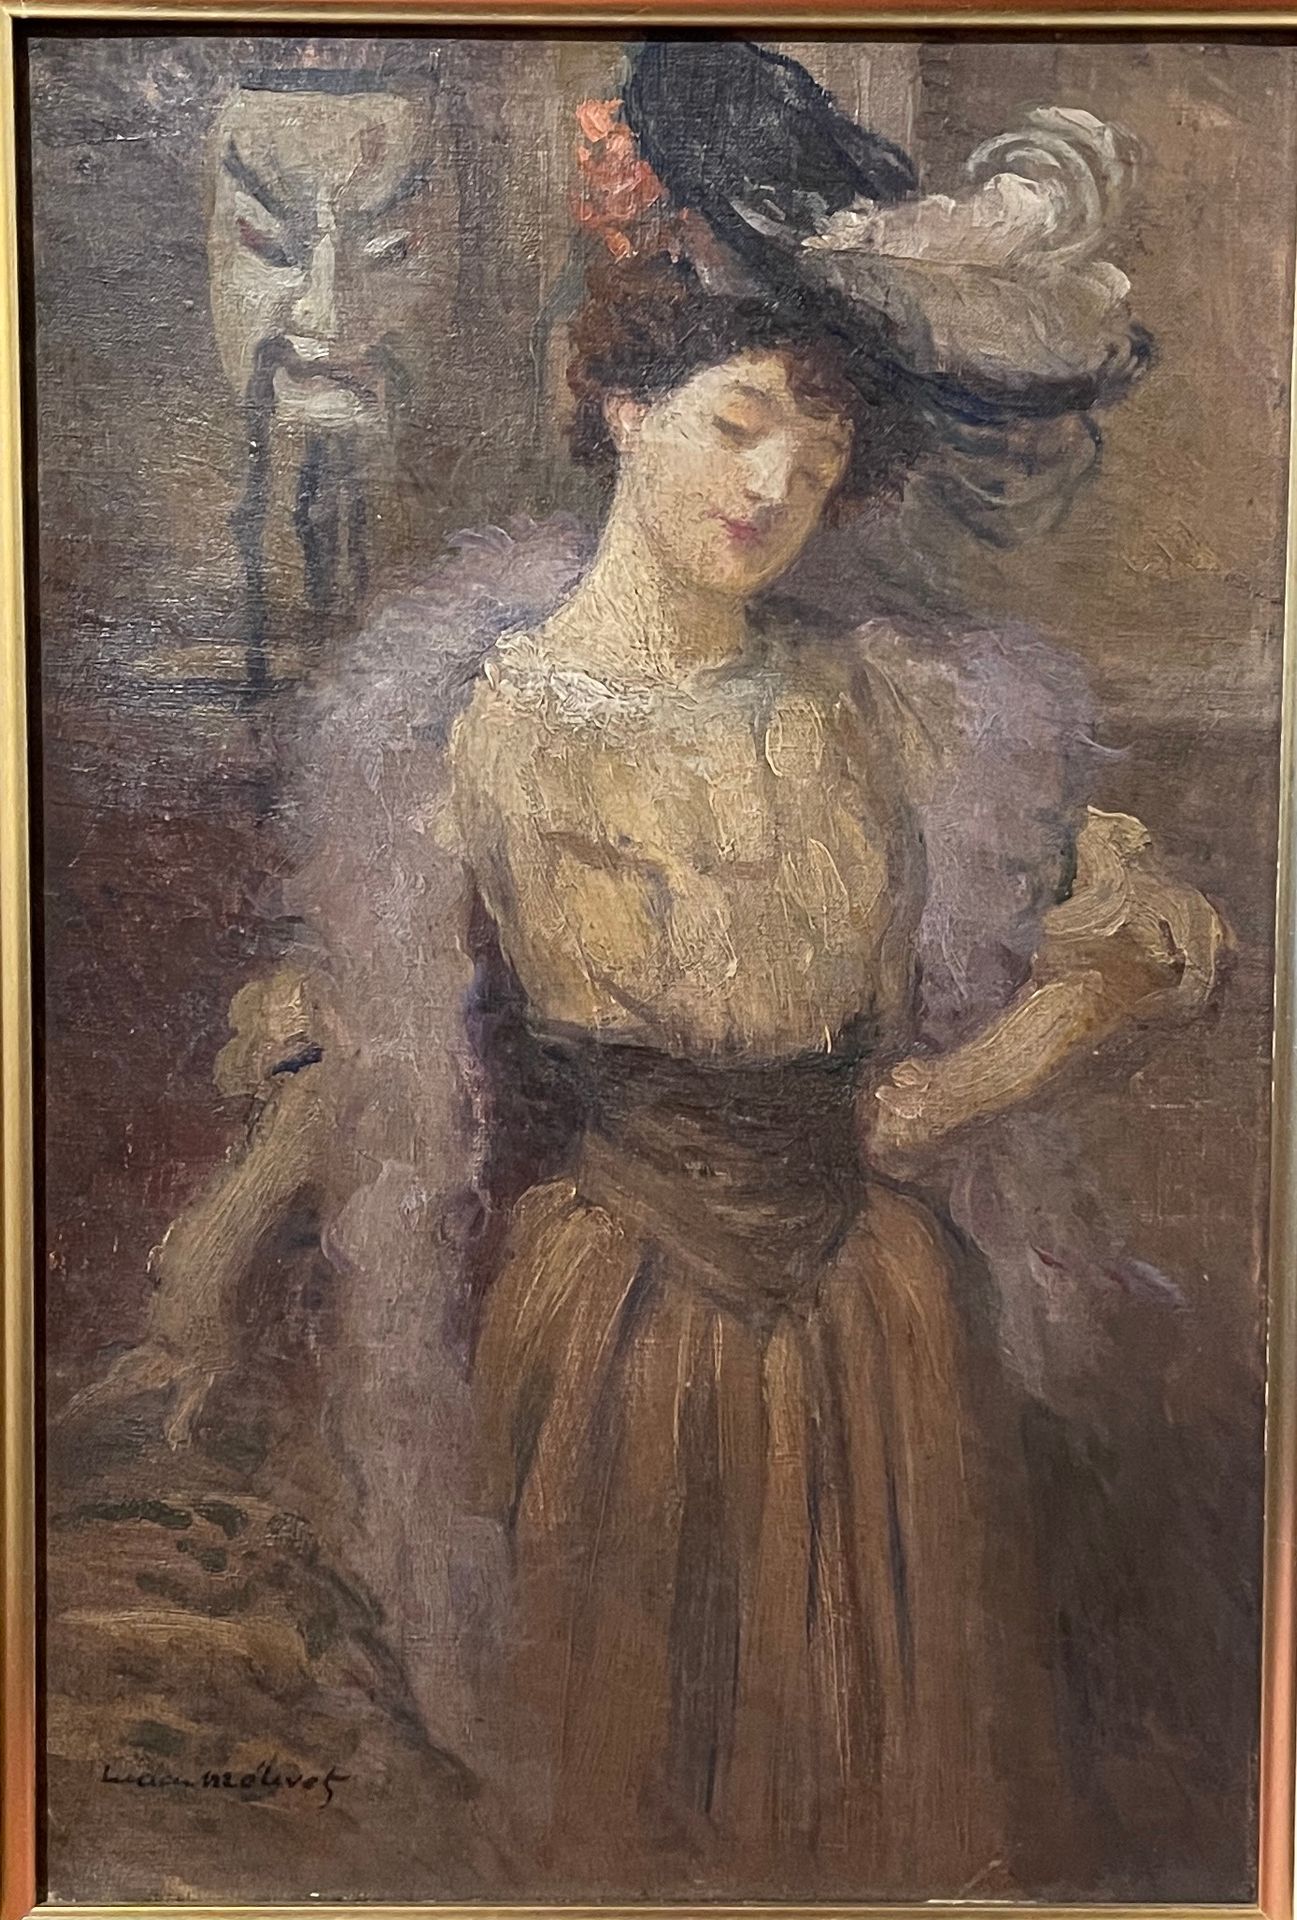 Null 卢西恩-梅蒂韦(1863-1930)

戴帽子和中国面具的女人

布面油画

左下方有签名

32 x 21 cm